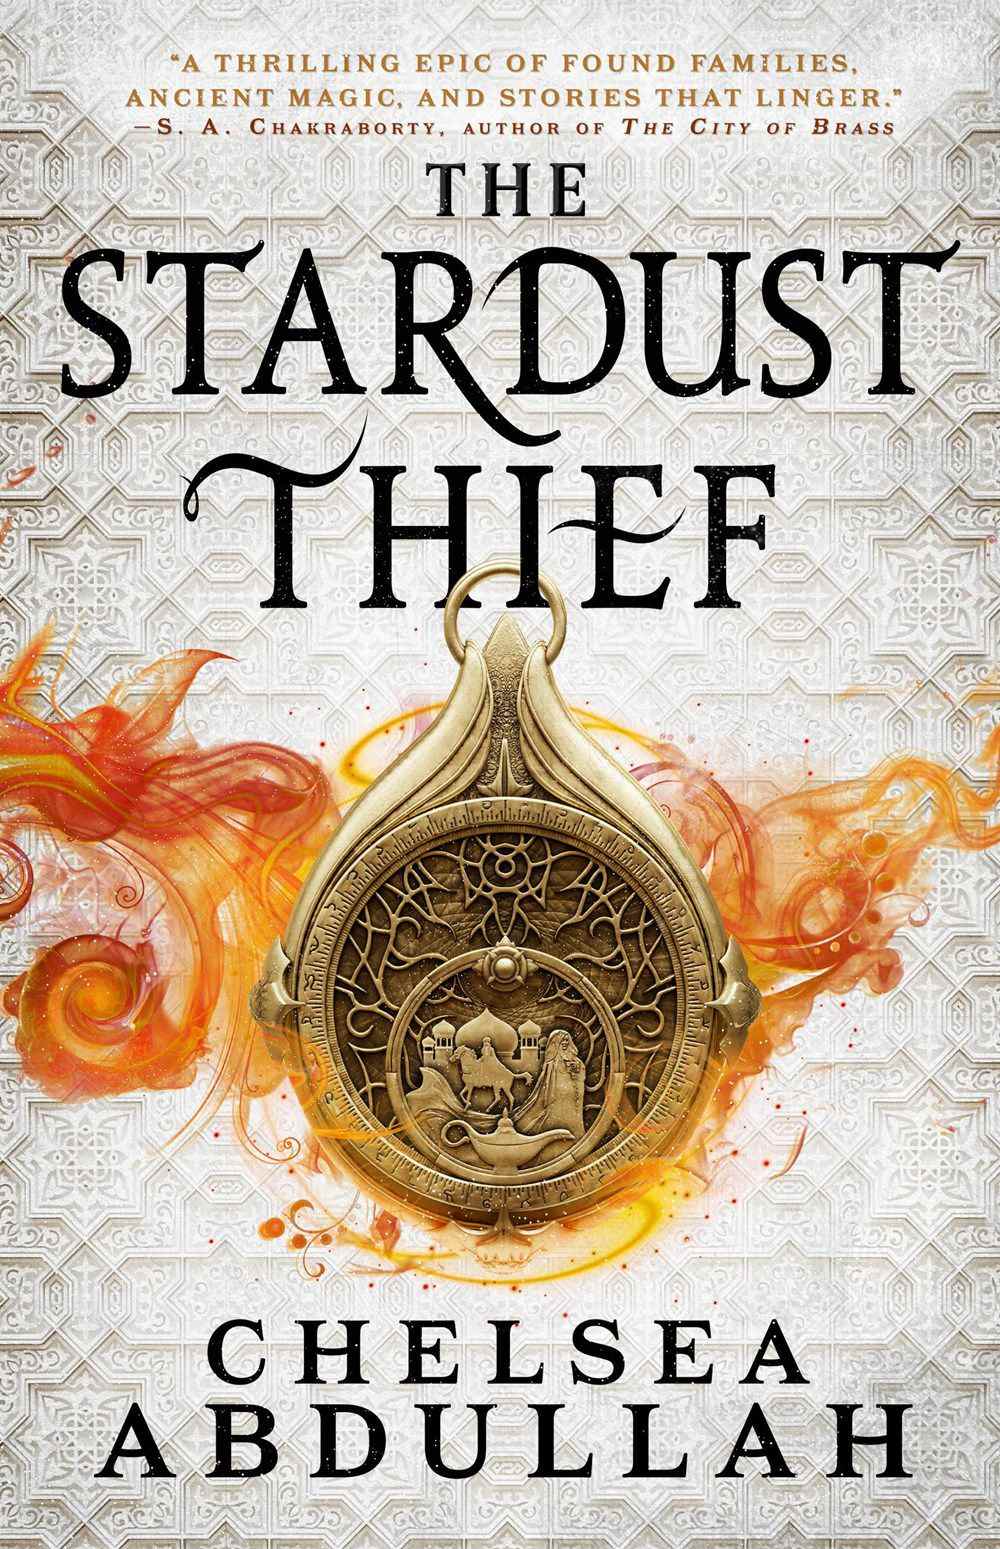 Couverture pour The Stardust Thief de Chelsea Abdullah, avec une amulette sur fond blanc.